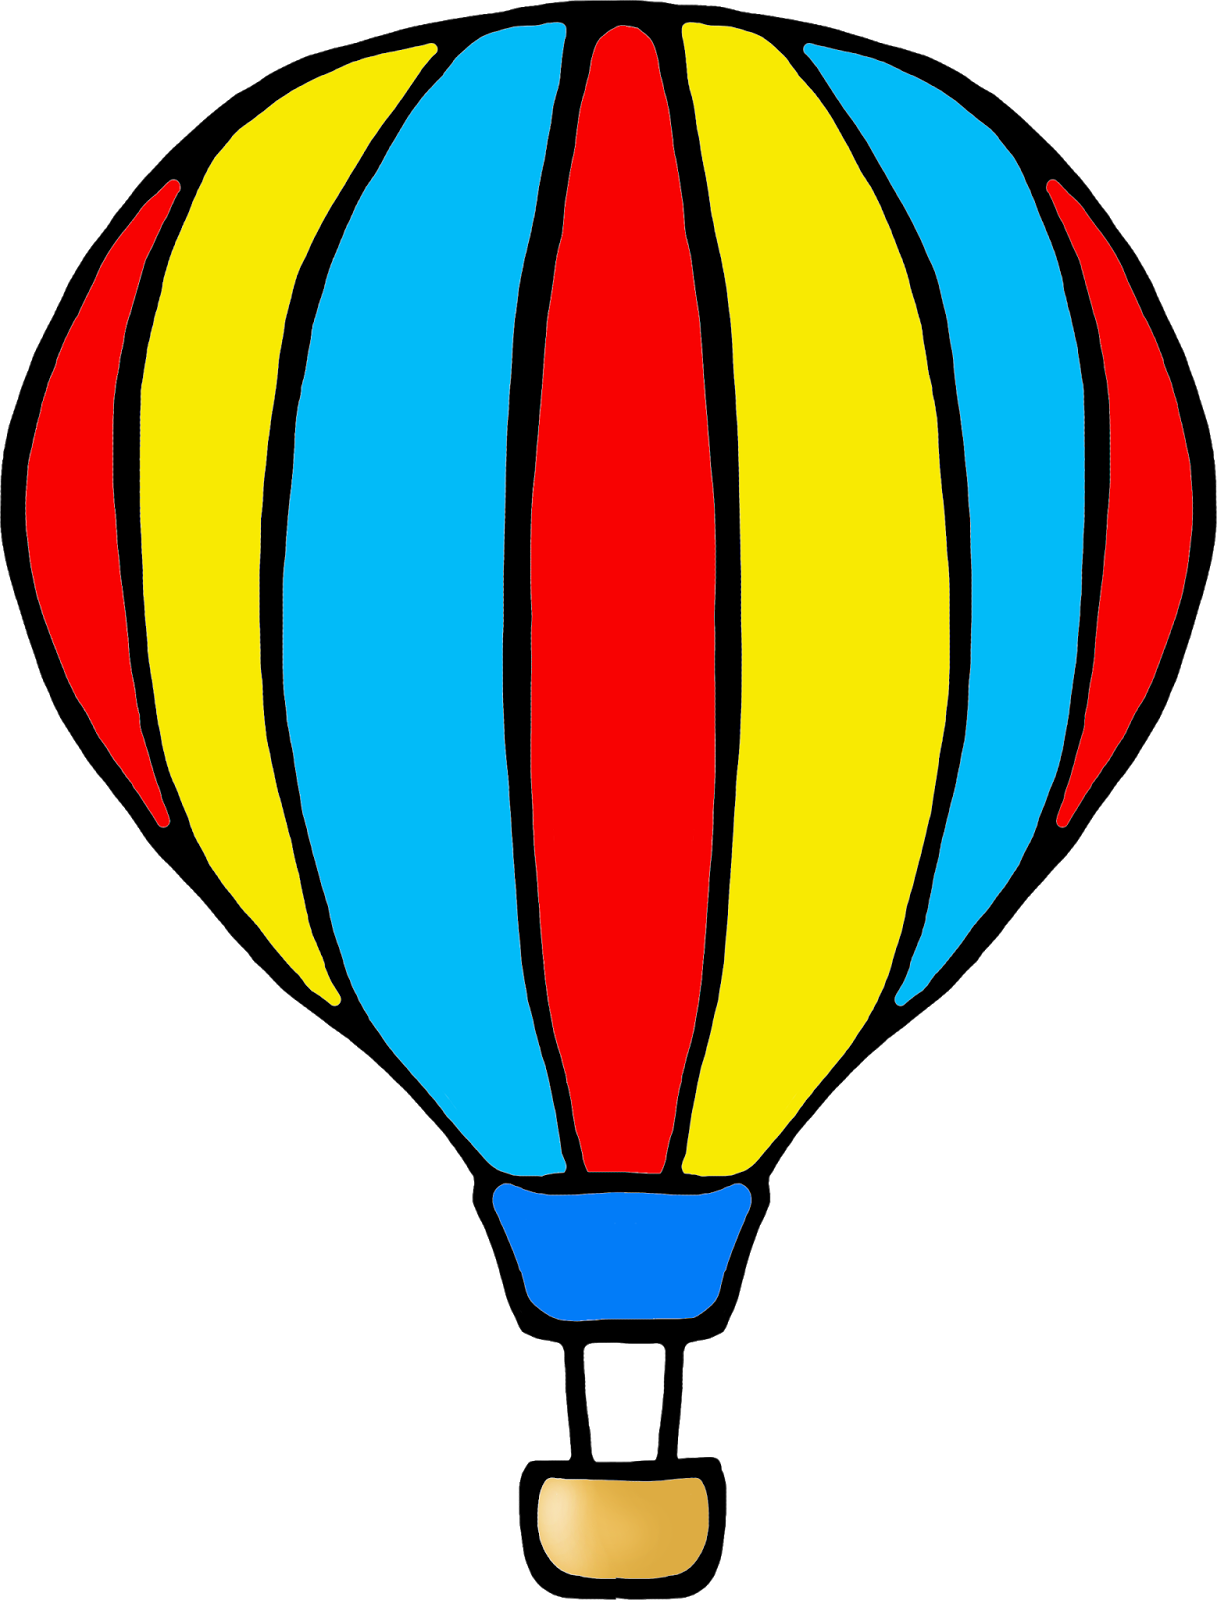 Tuesday, February 26, - Hot Air Balloon Colour (1217x1600)